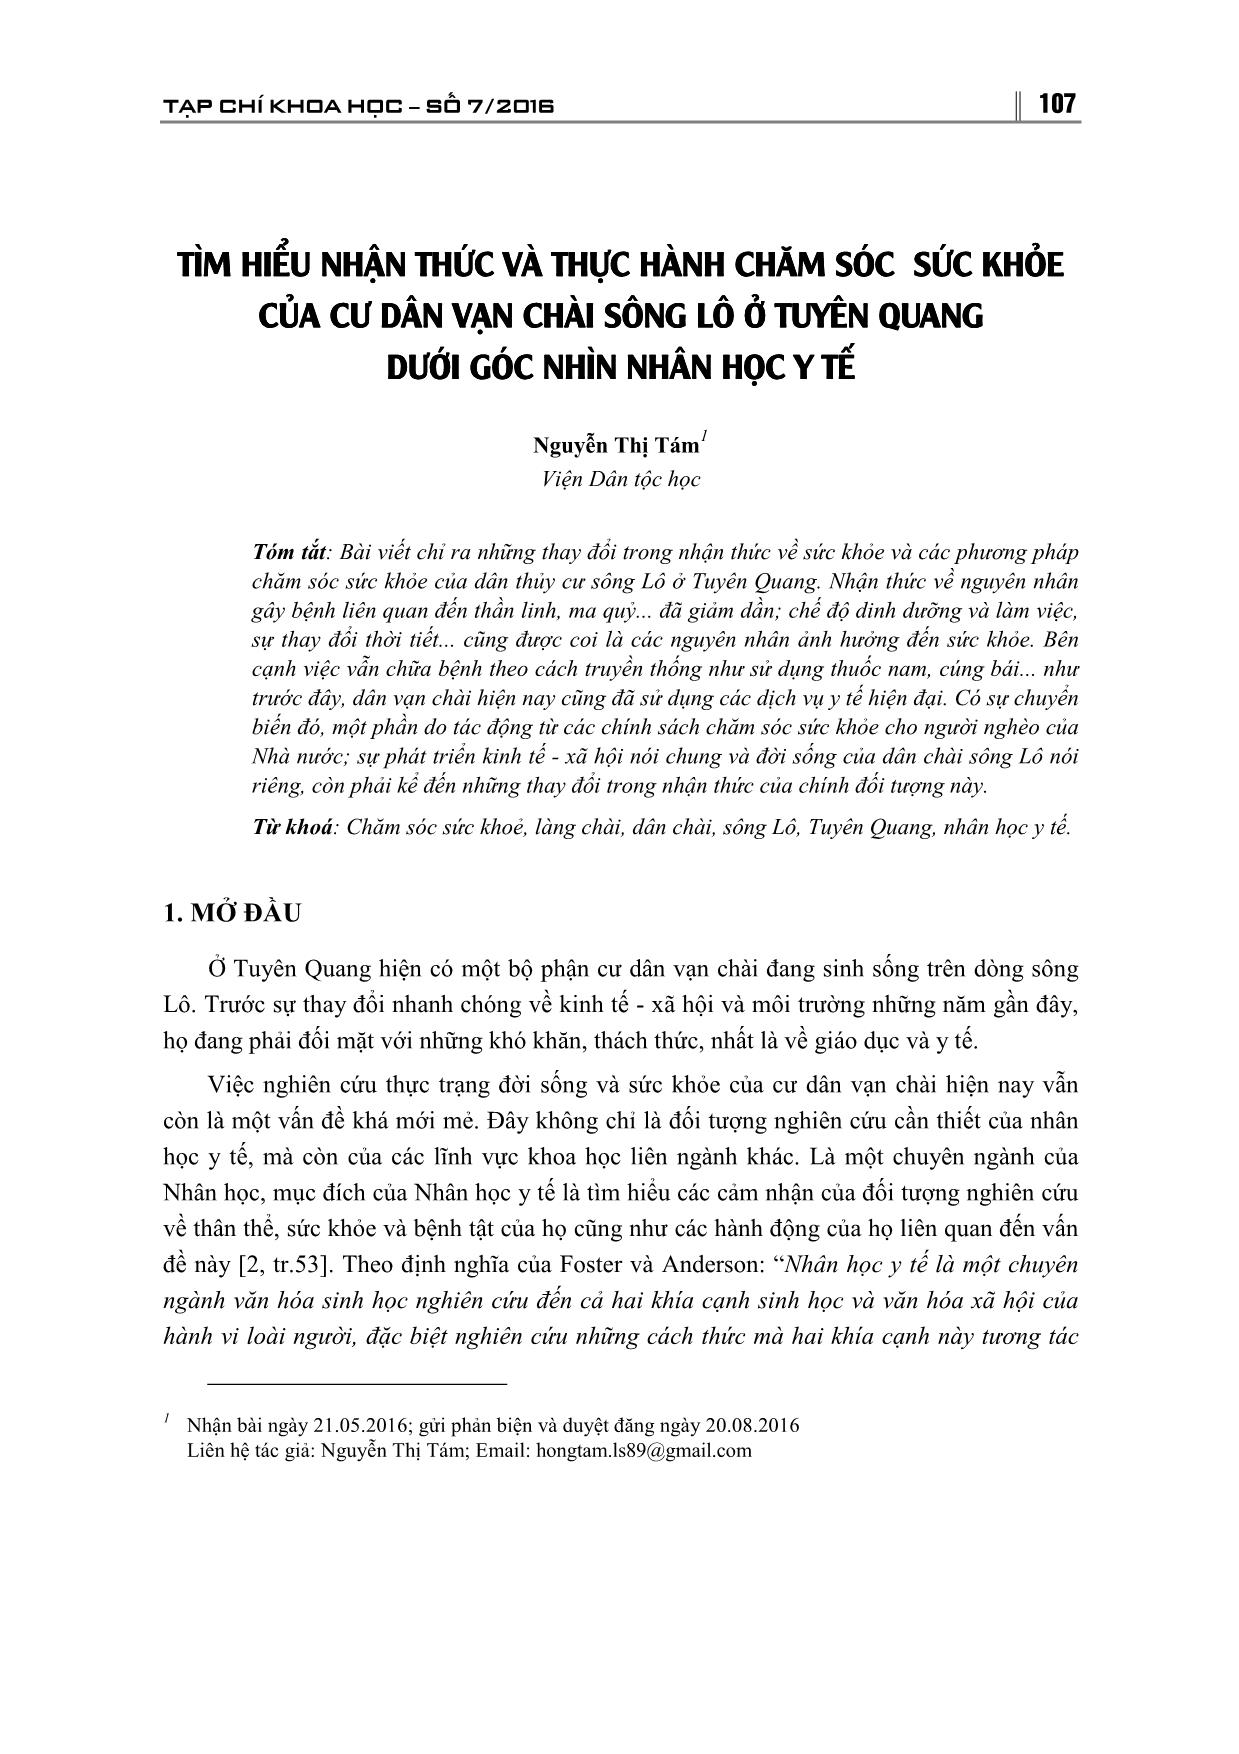 Tìm hiểu nhận thức và thực hành chăm sóc sức khỏe của cư dân vạn chài sông Lô ở Tuyên Quang dưới góc nhìn nhân học y tế trang 1